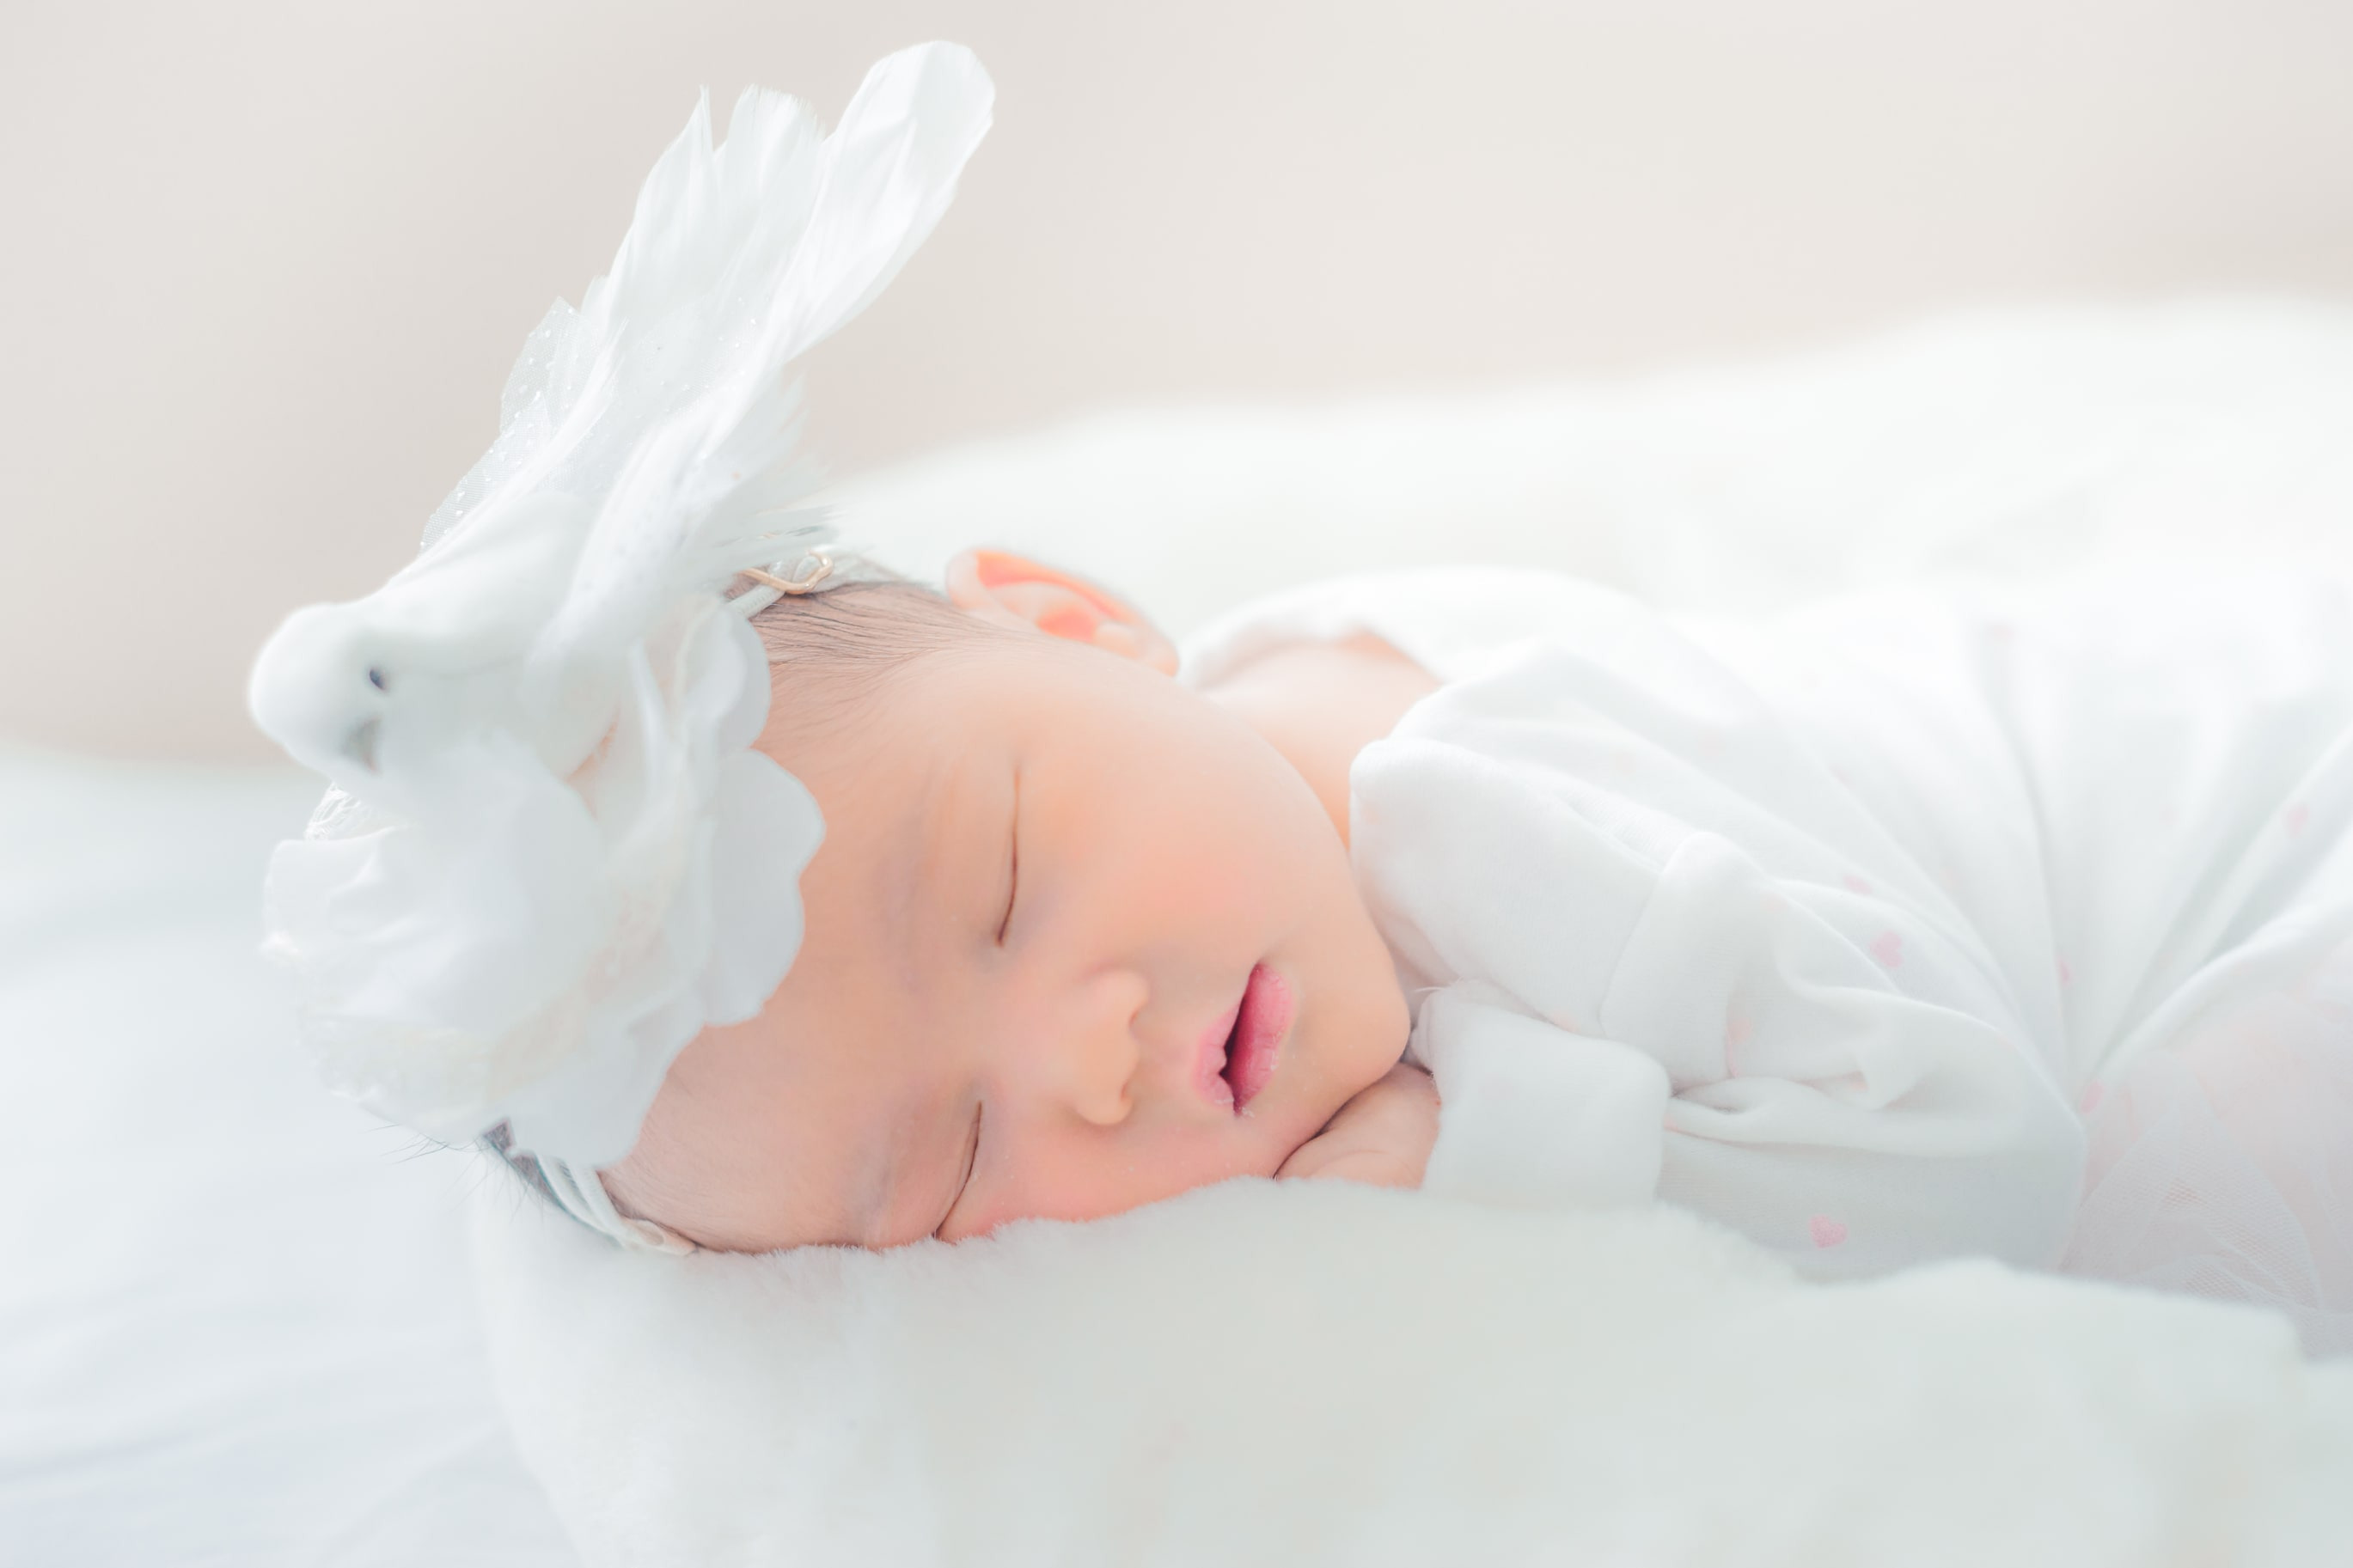 Higiena snu niemowlaka a materac - jaki wybrać? 